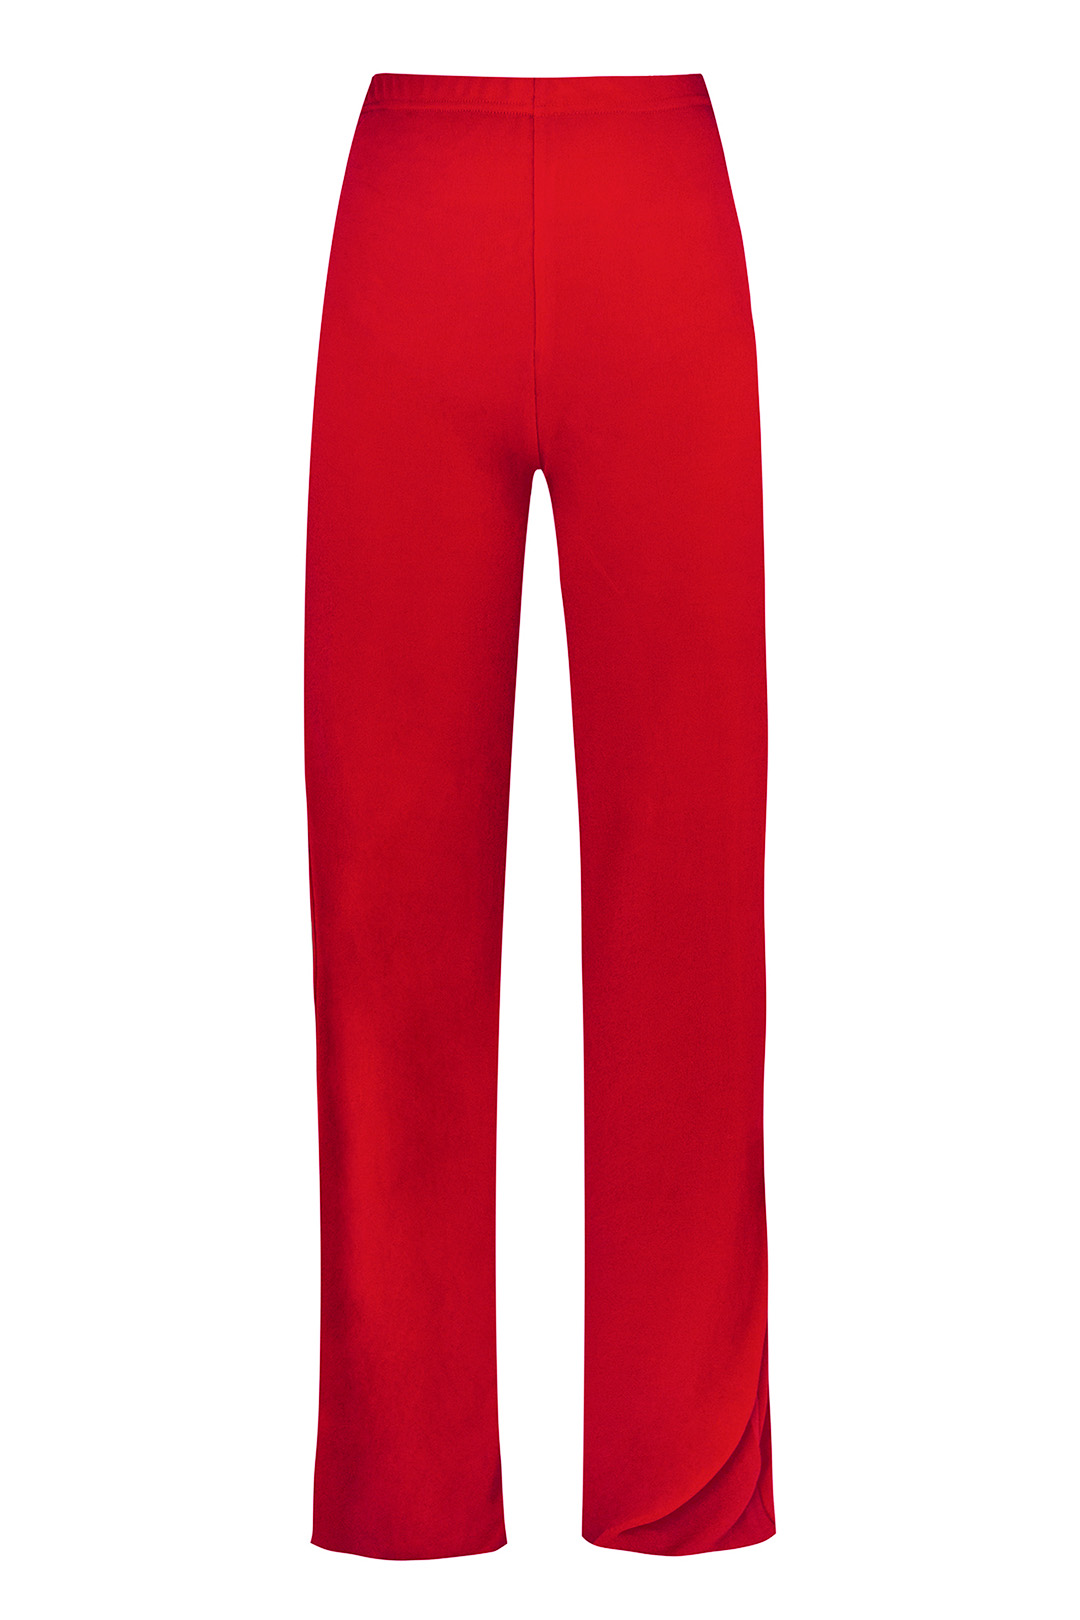 Pantalon Punto de Seda Rojo Teria Yabar